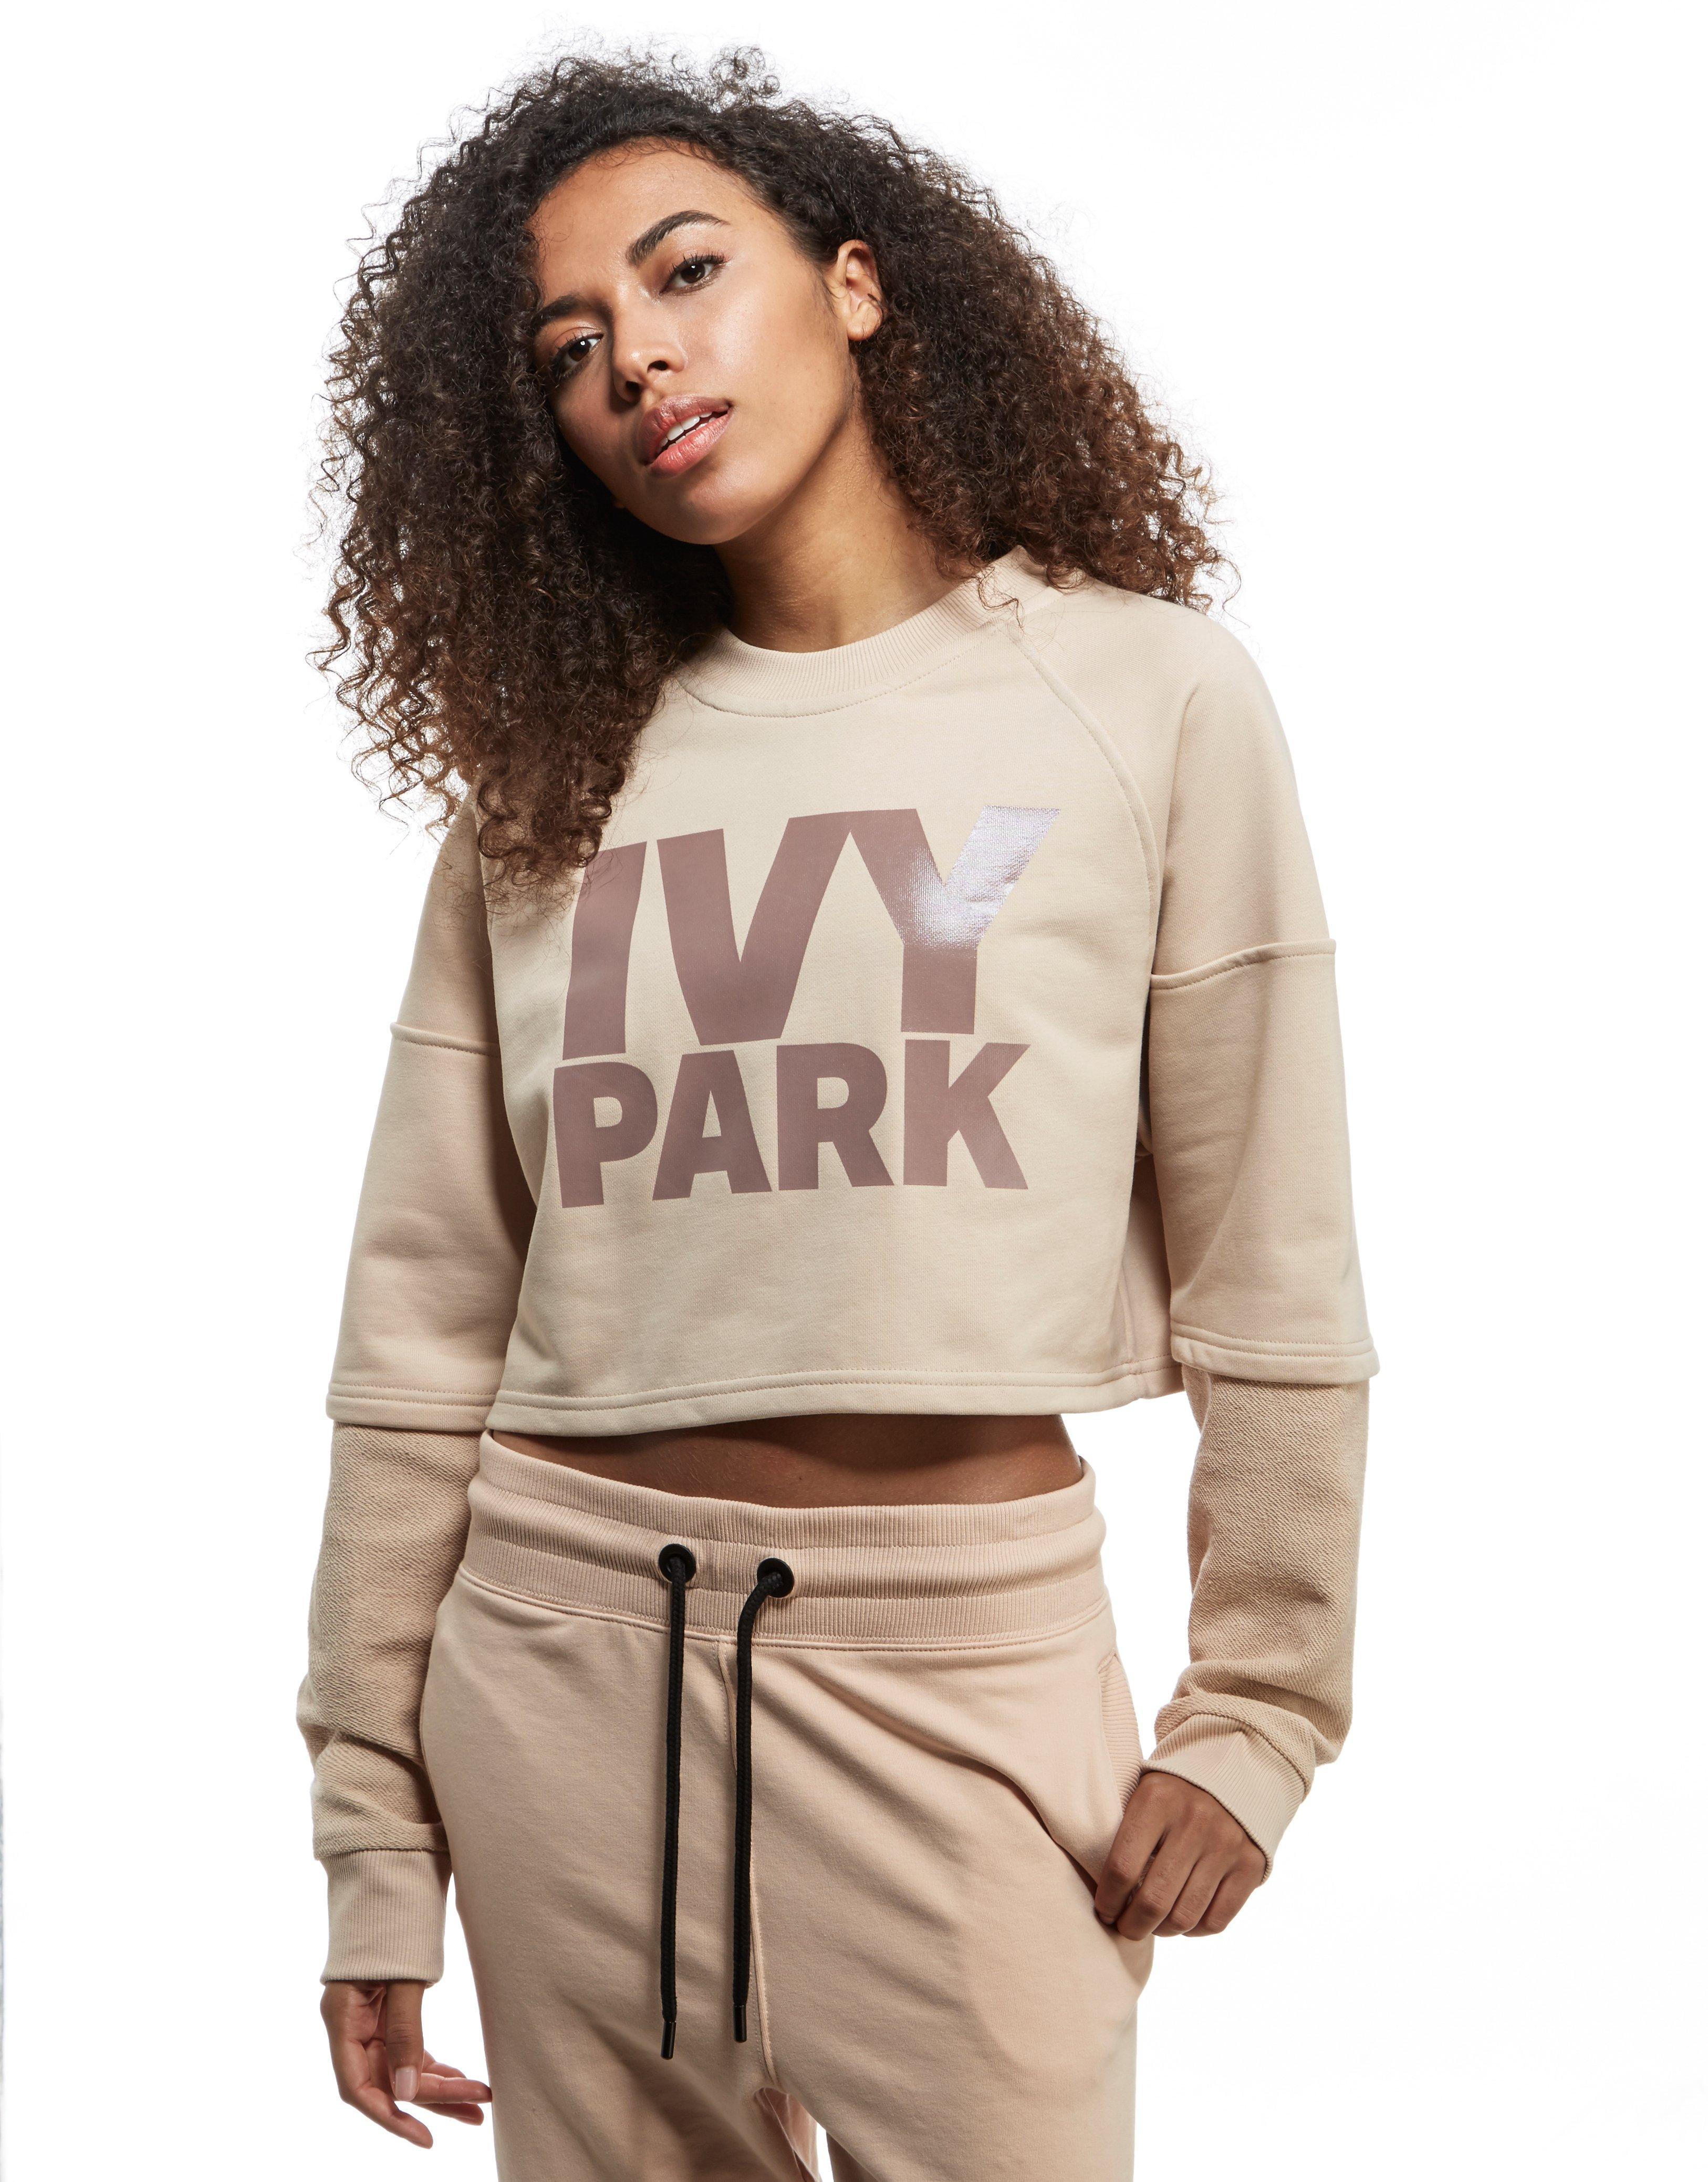 Lyst - Ivy park Washed Crew Crop Sweatshirt in Pink - Save 21%